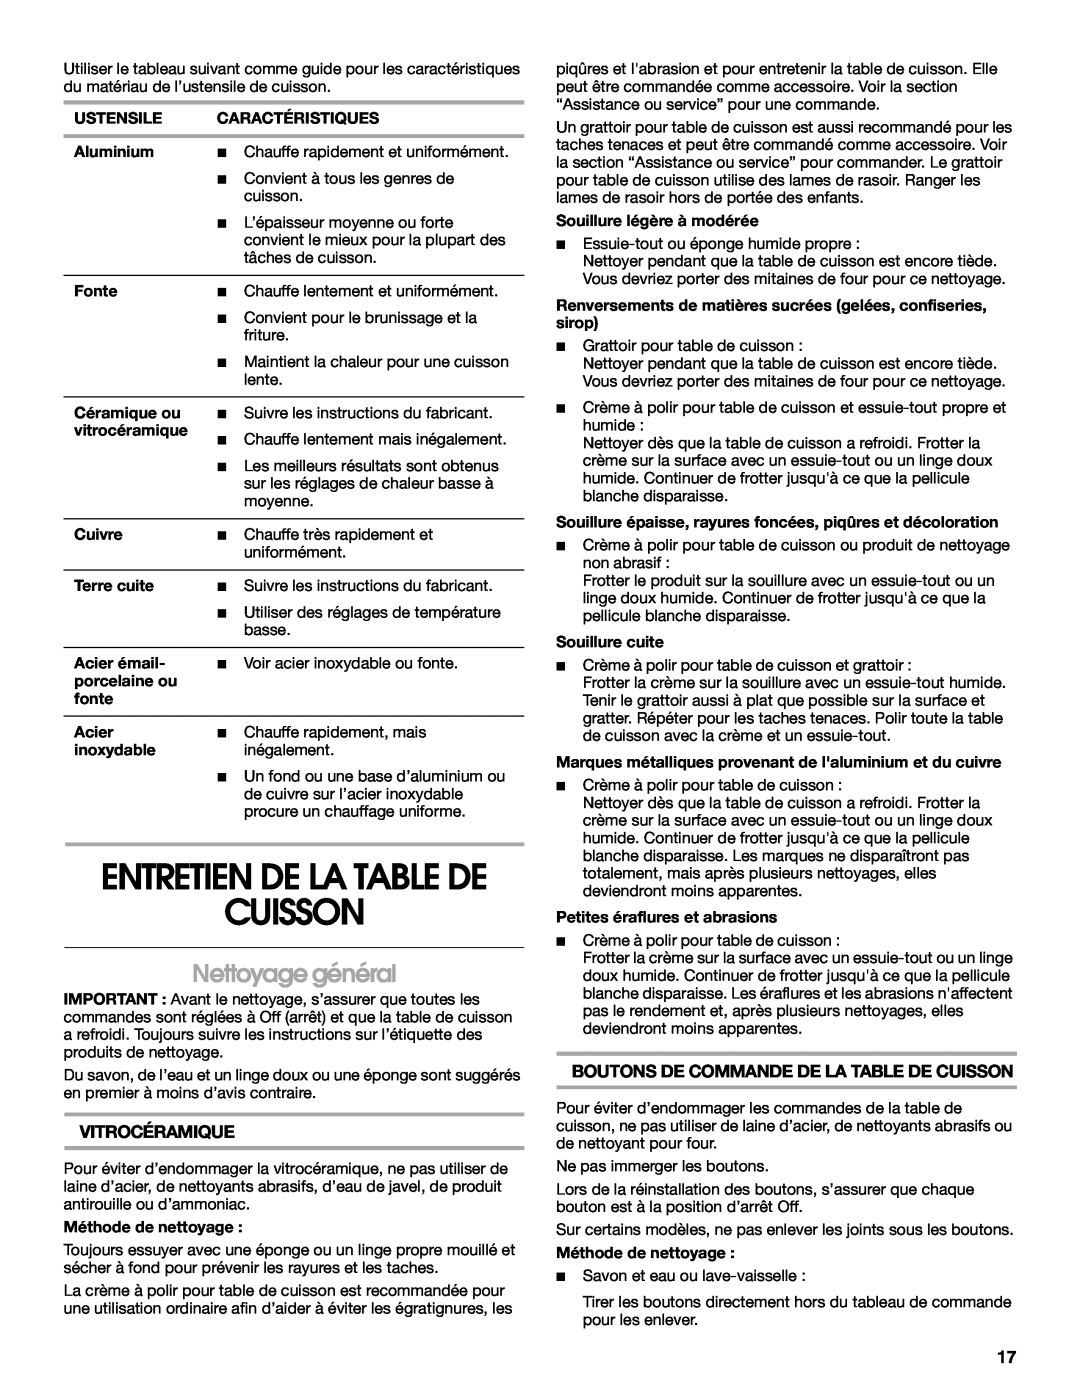 Jenn-Air W10204447A manual Cuisson, Nettoyage général, Entretien De La Table De, Vitrocéramique 